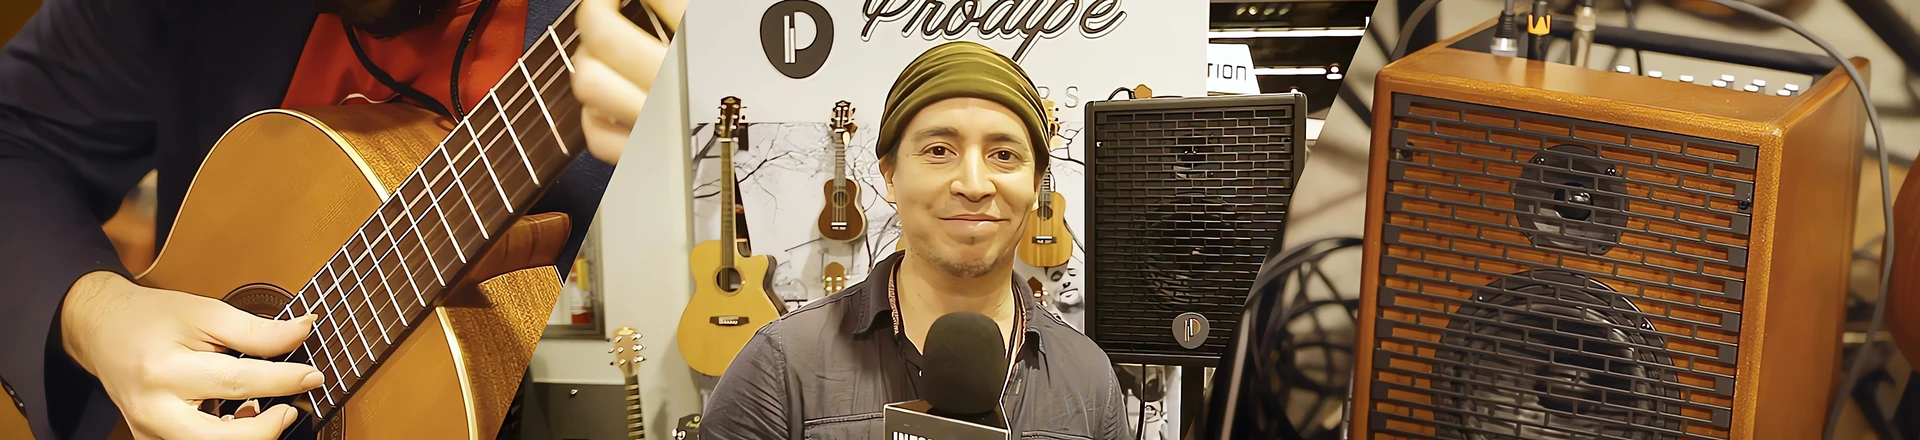 NAMM'19: Gitary, mikrofony i wzmacniacze od Prodipe